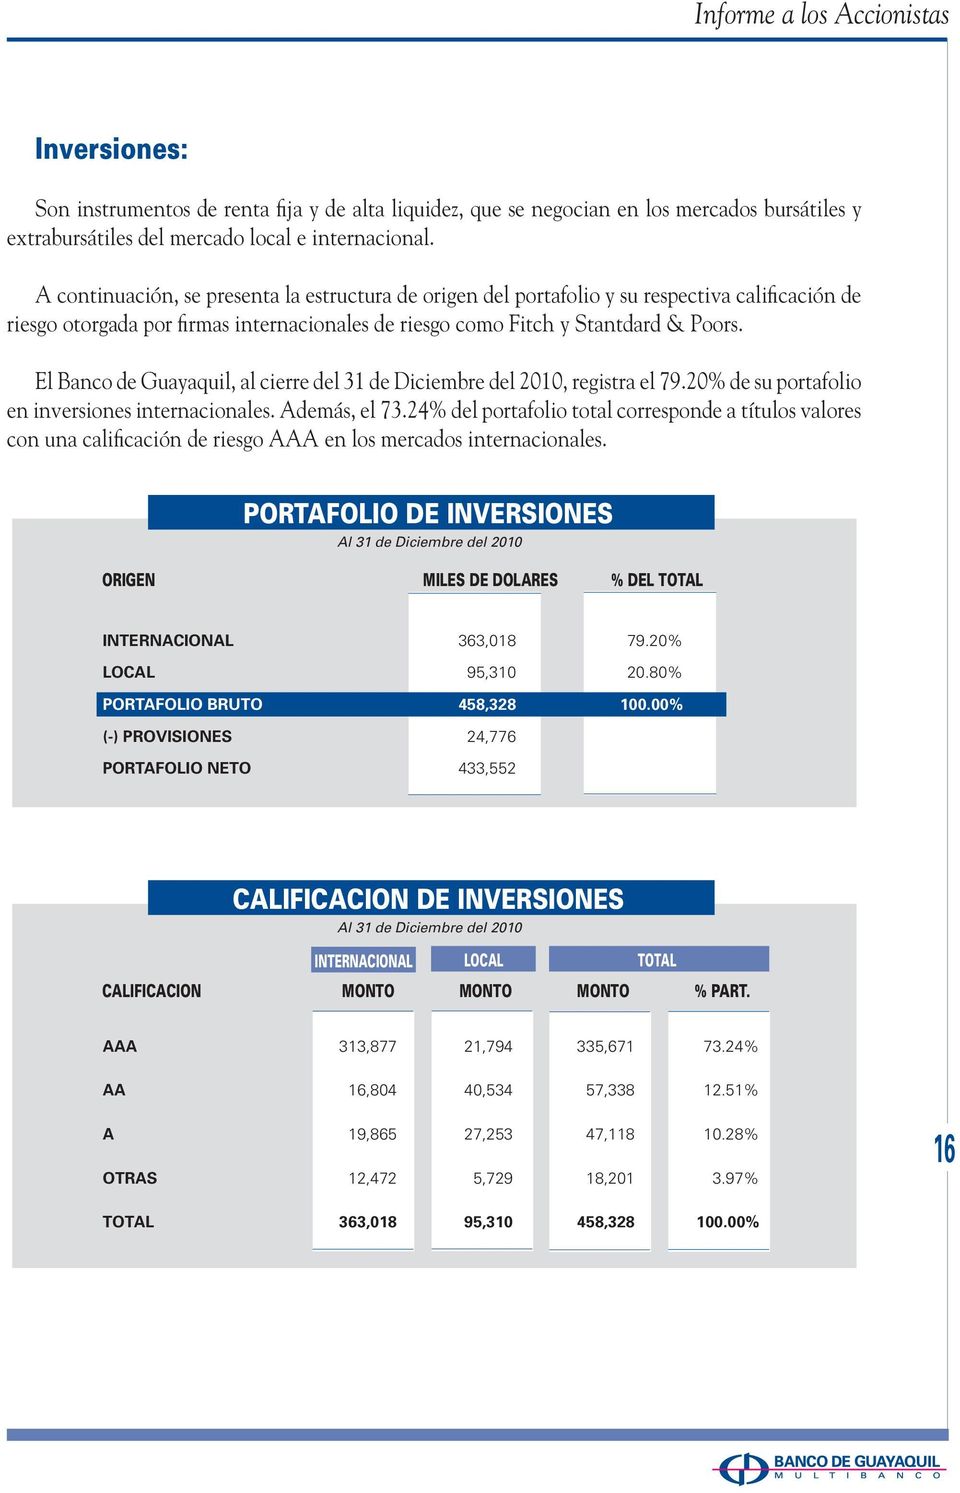 El Banco de Guayaquil, al cierre del 31 de Diciembre del 2010, registra el 79.20% de su portafolio en inversiones internacionales. Además, el 73.